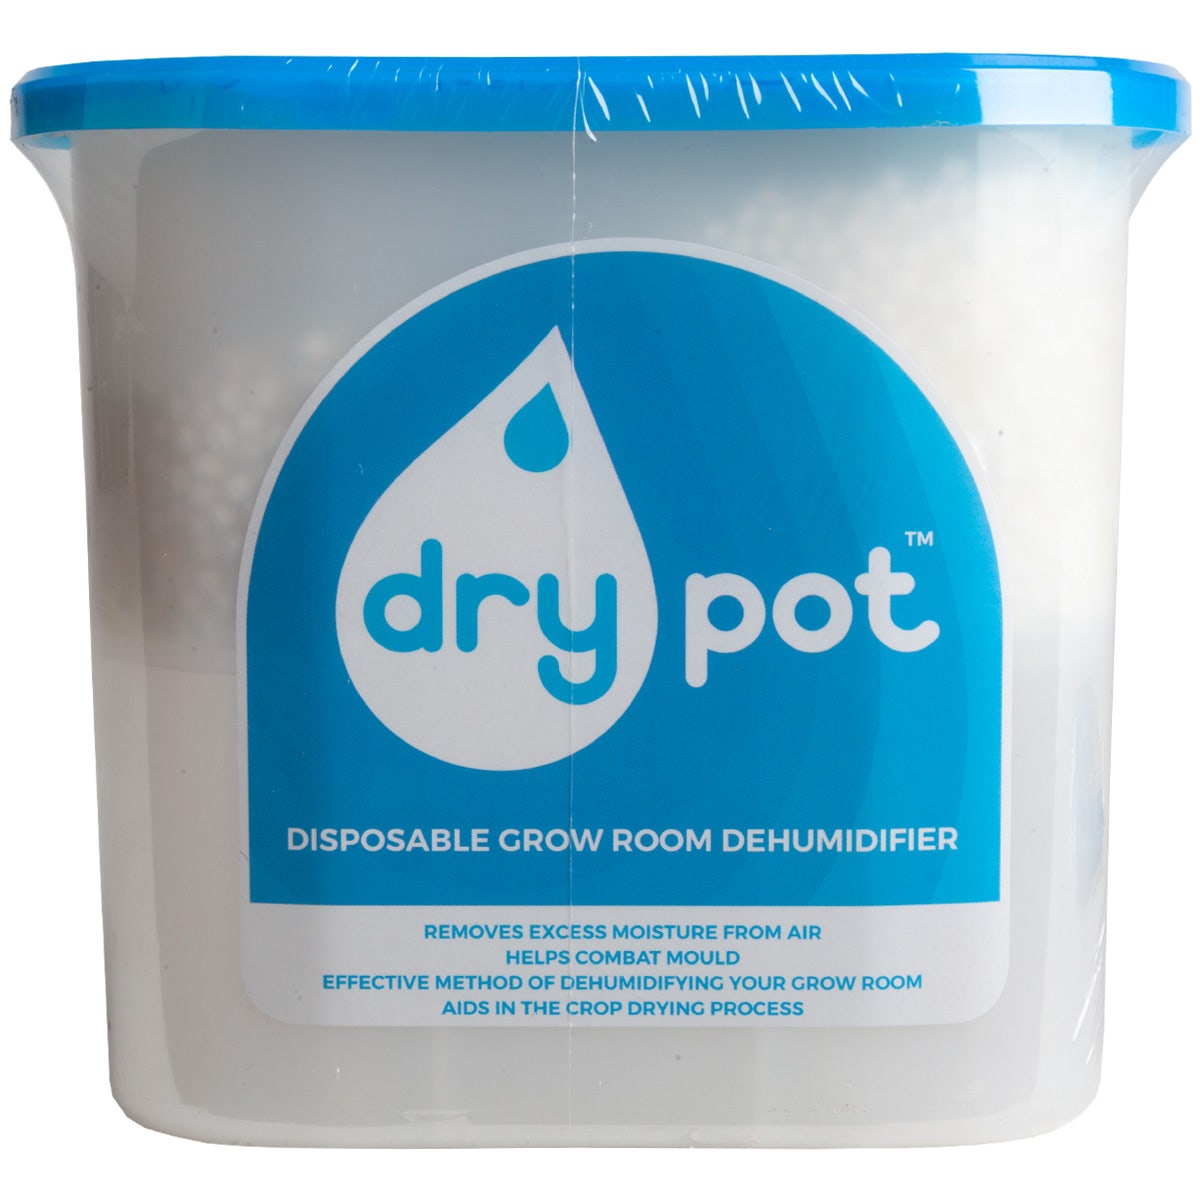 Dry Pot Disposable Dehumidifier